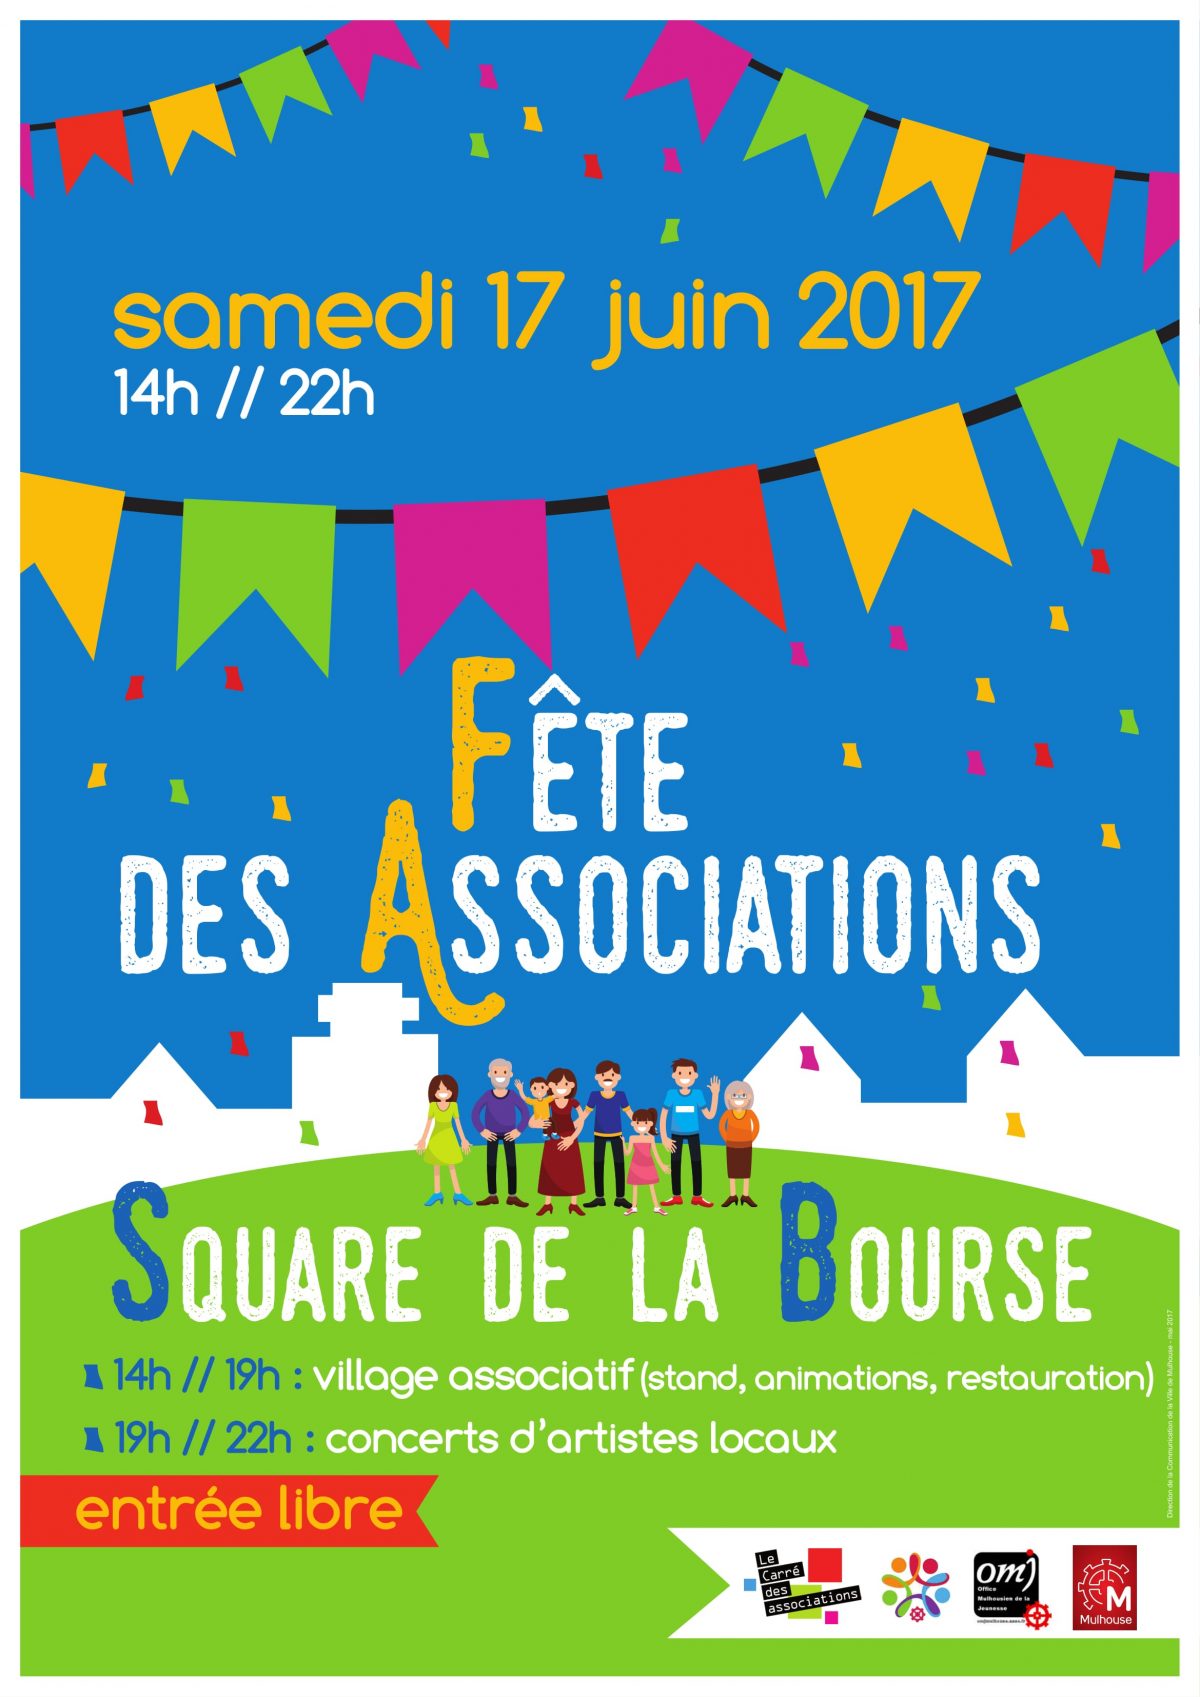 Fête des Associations Square de la Bourse samedi 17 juin 2017